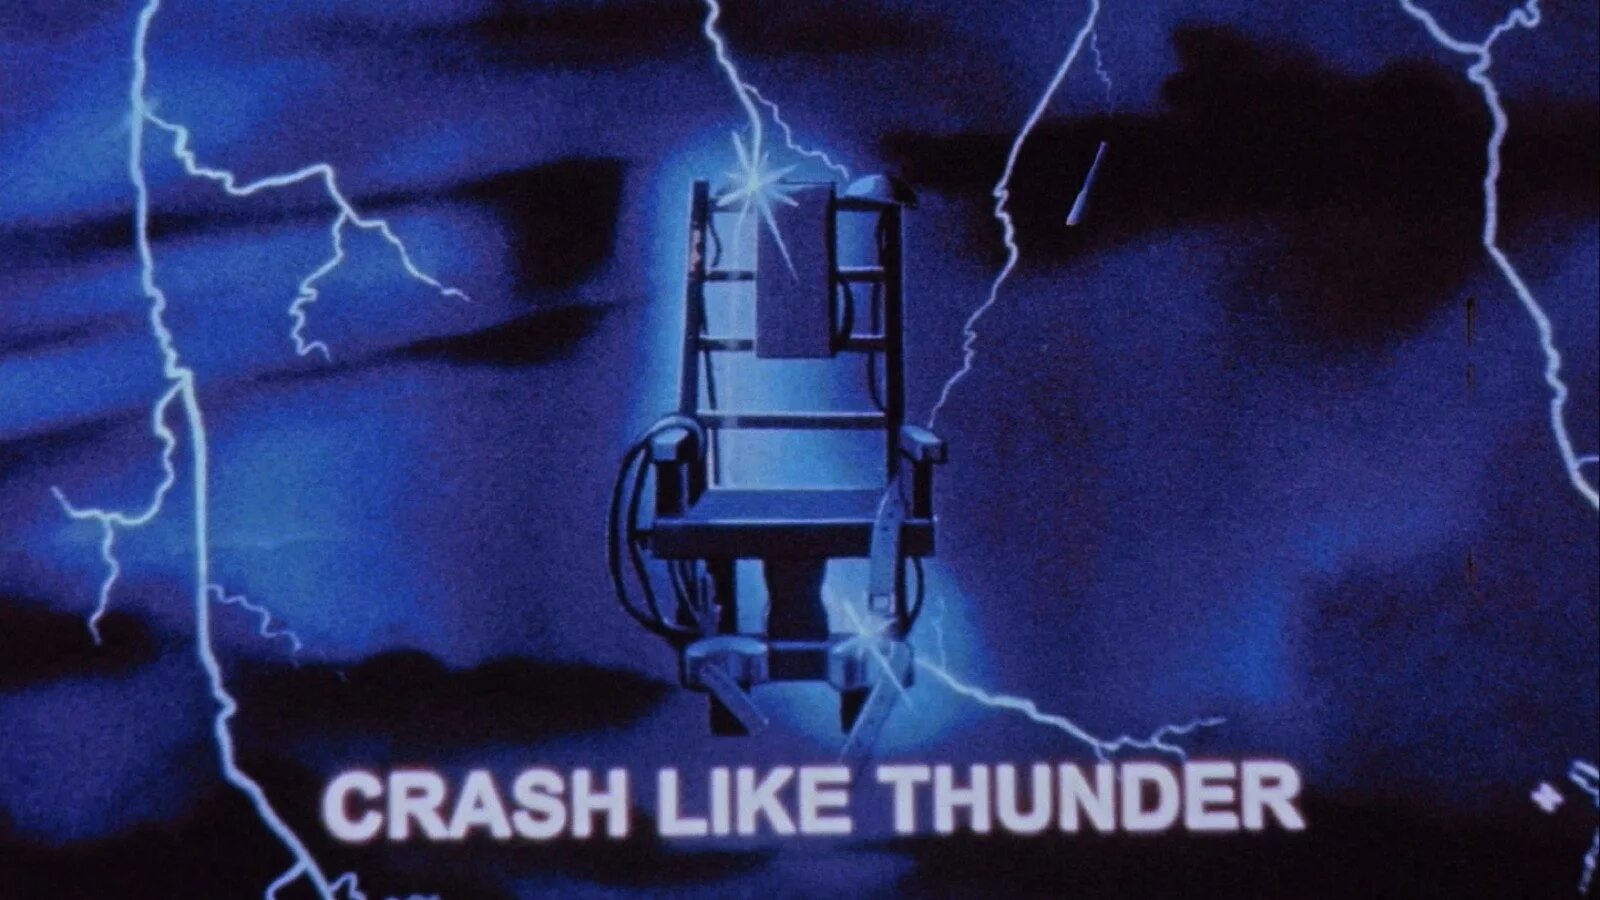 Ride like Lightning, crash like Thunder. Lightning crashes обложка. If you Ride like Lightning, you gonna crash like Thunder.